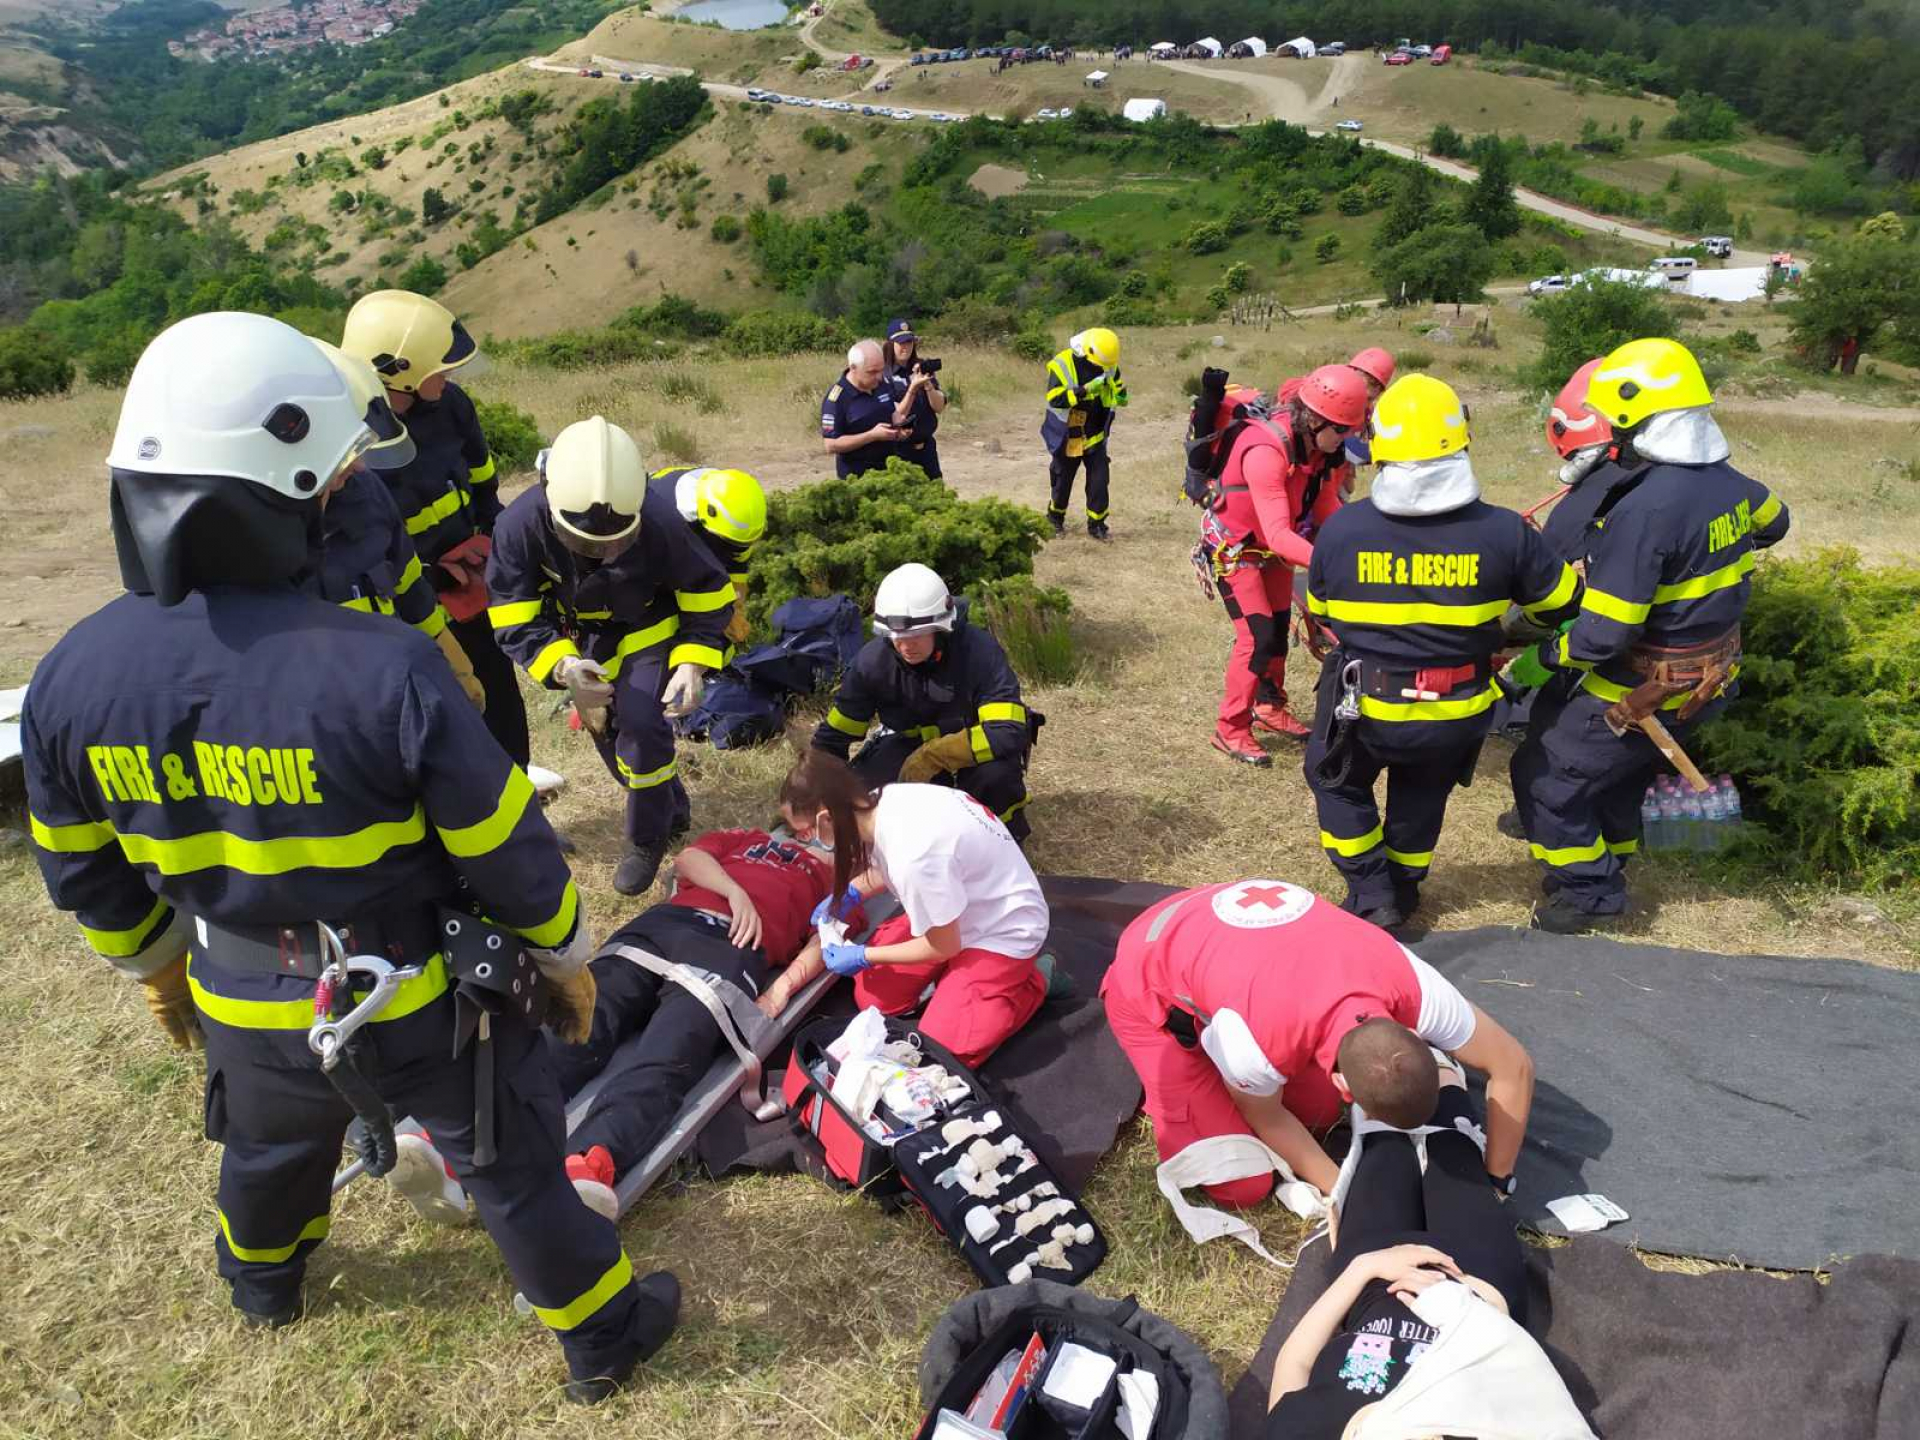  Самолет със 150 души на борда кацна аварийно над село Поленица и избухна в пламъци ВИДЕО